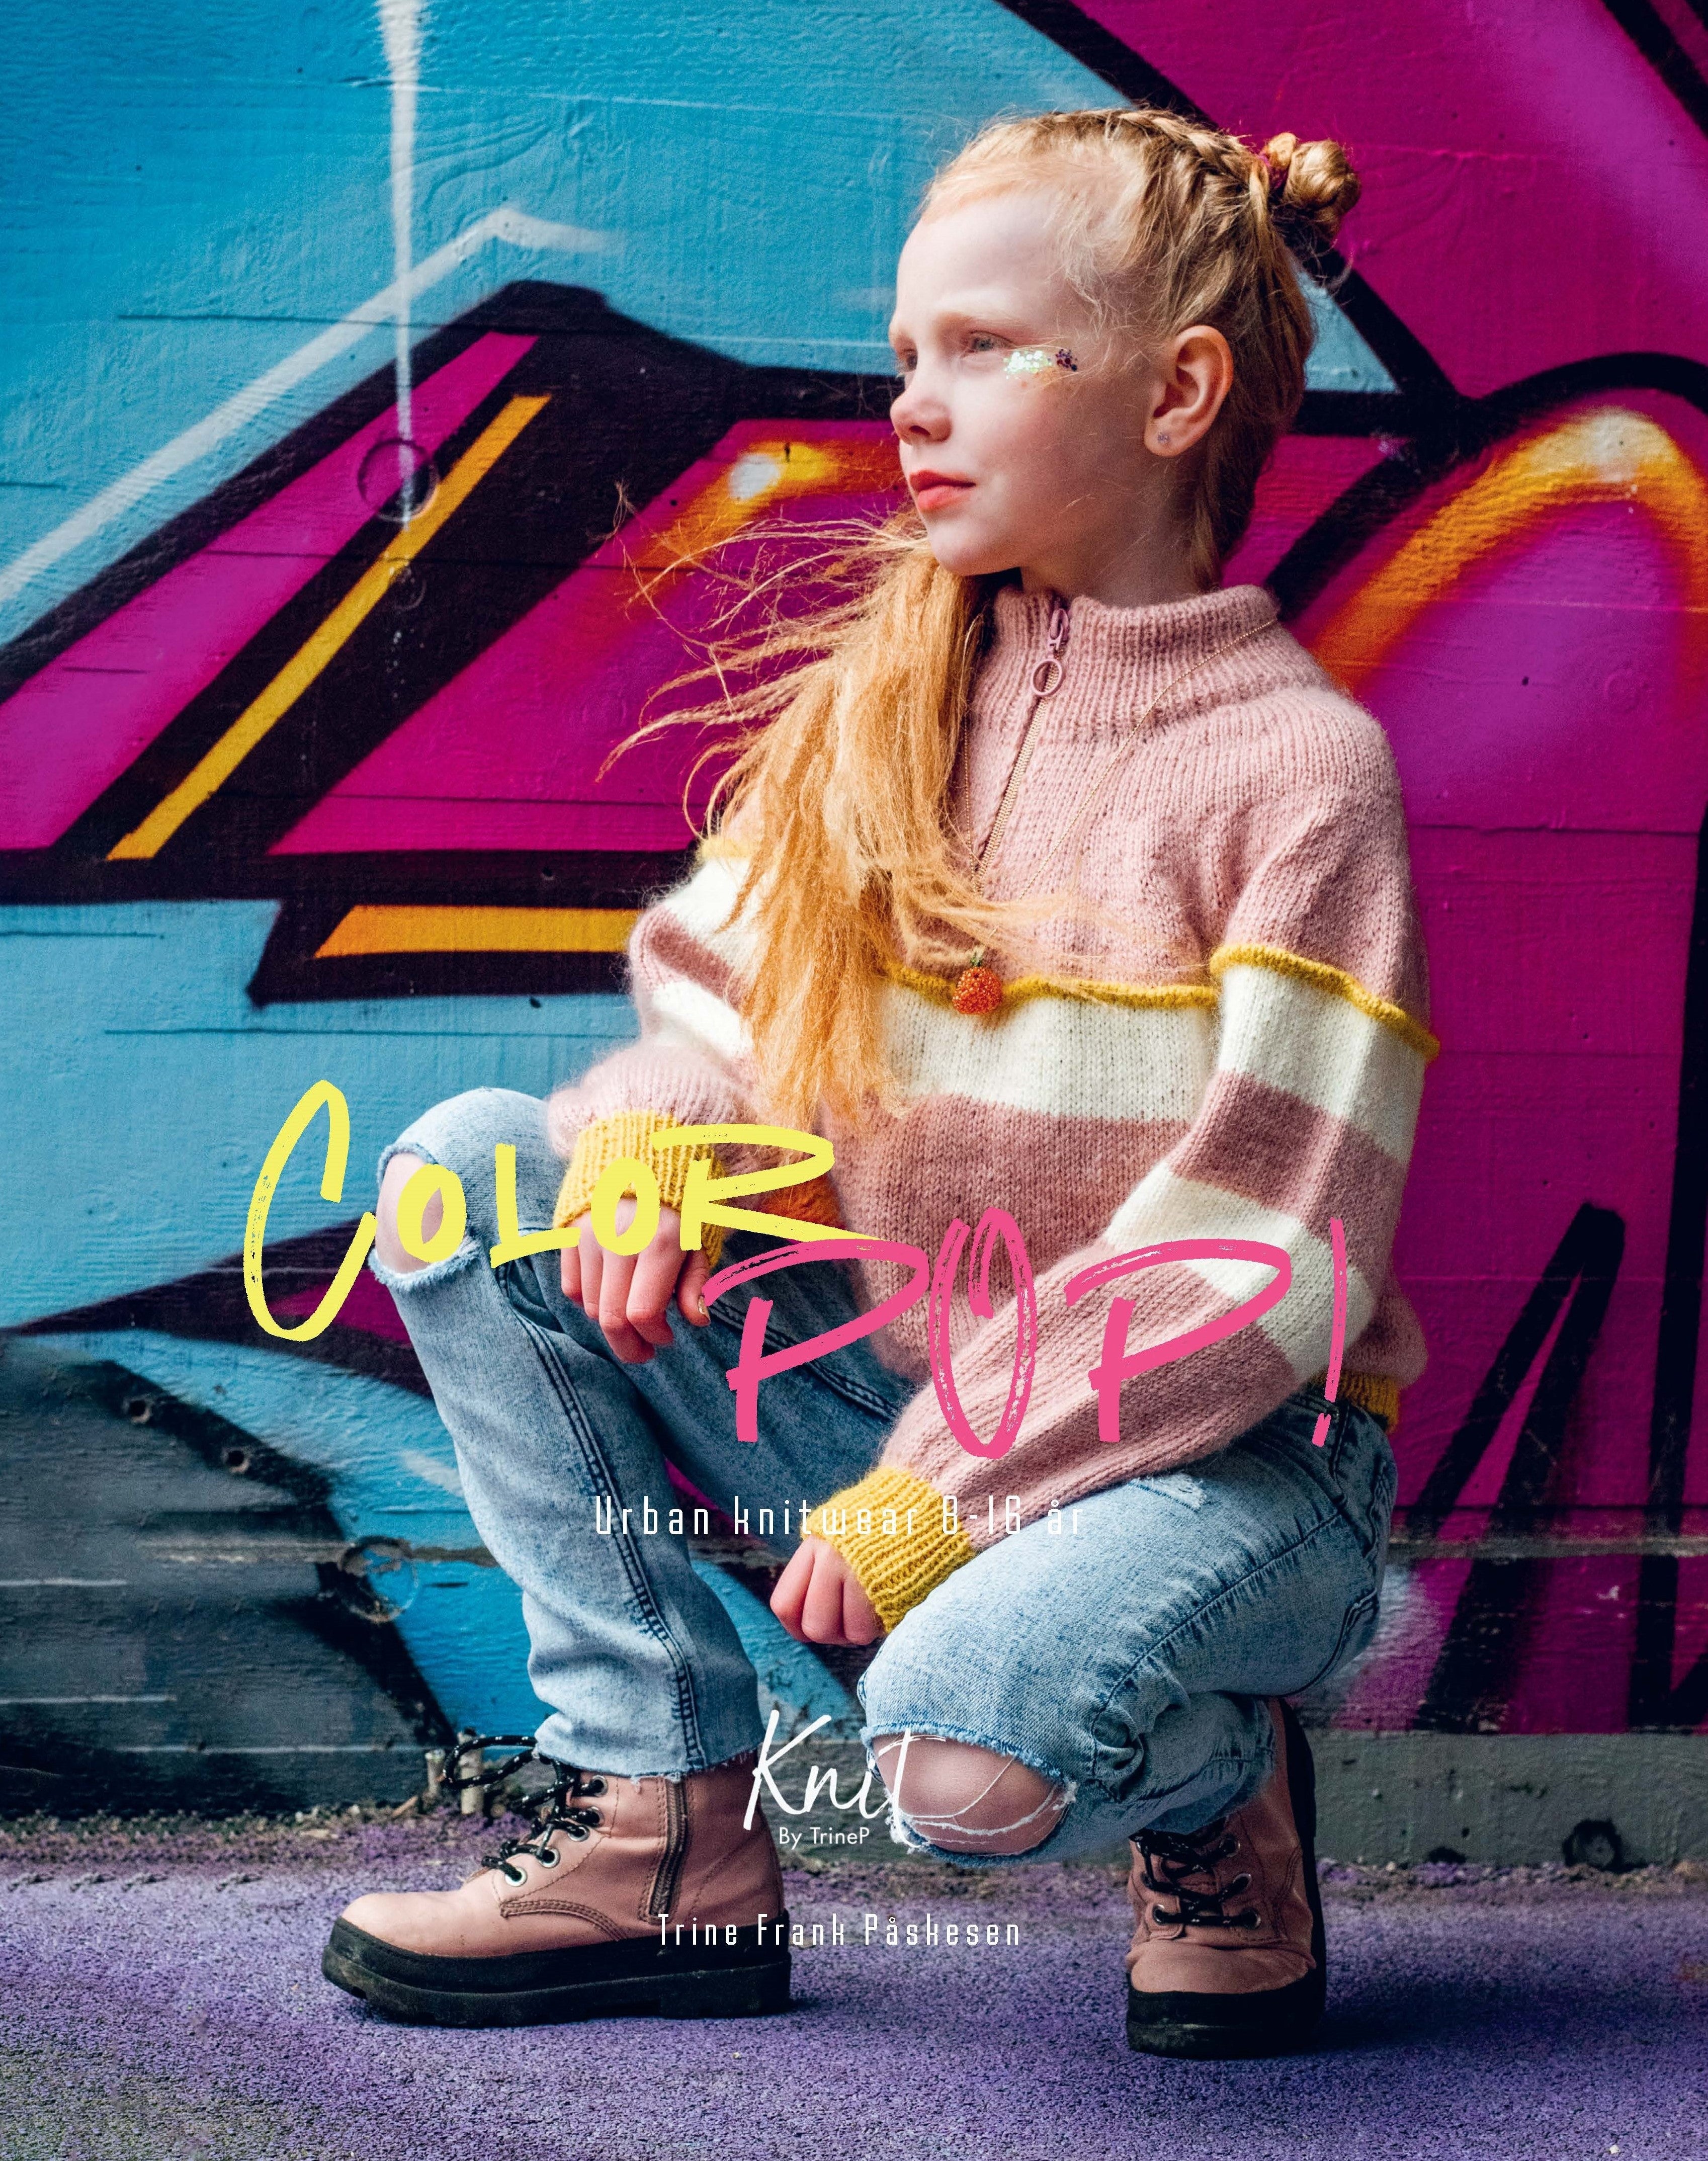 E-Bog: Color Pop! Urban Knitwear 8-16 år